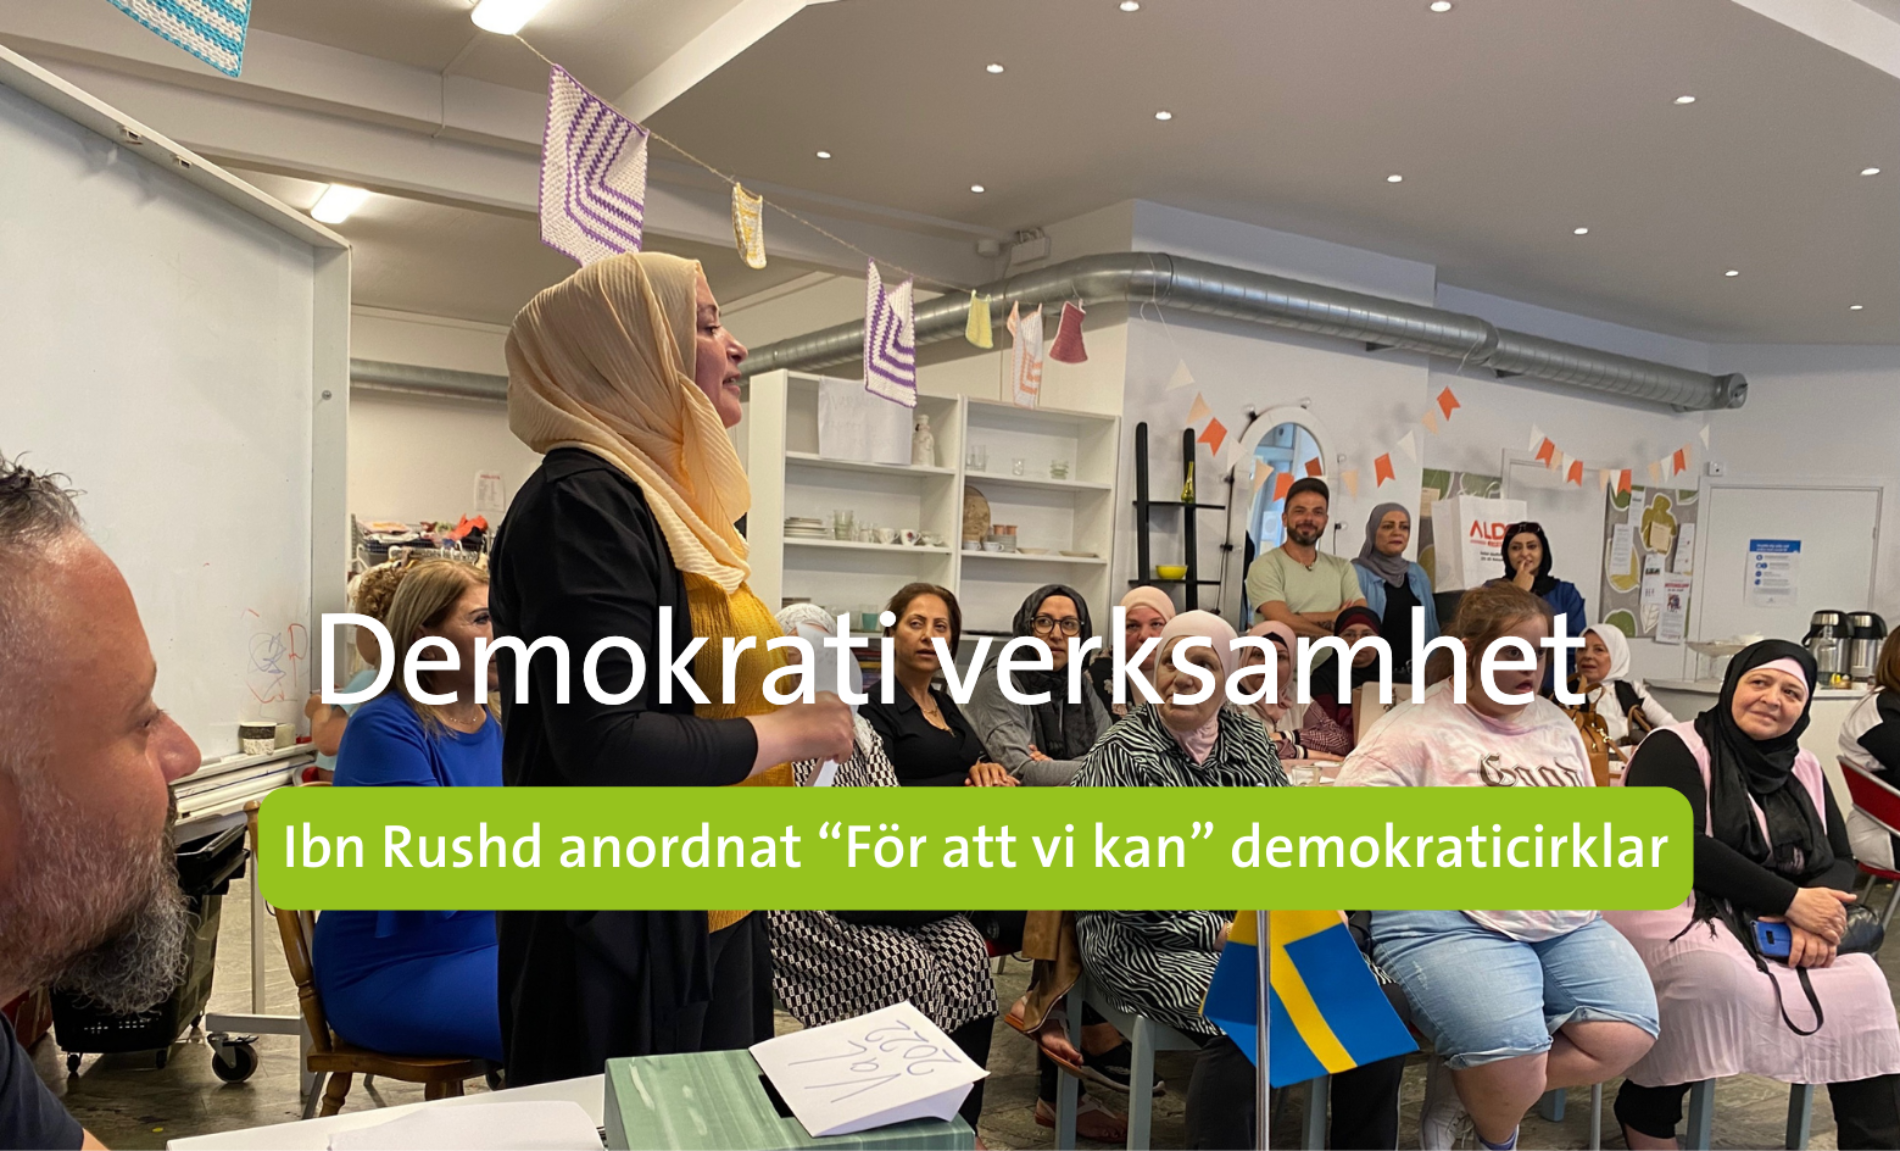 Ibn Rushds demokrati insatsningar i Kalmar